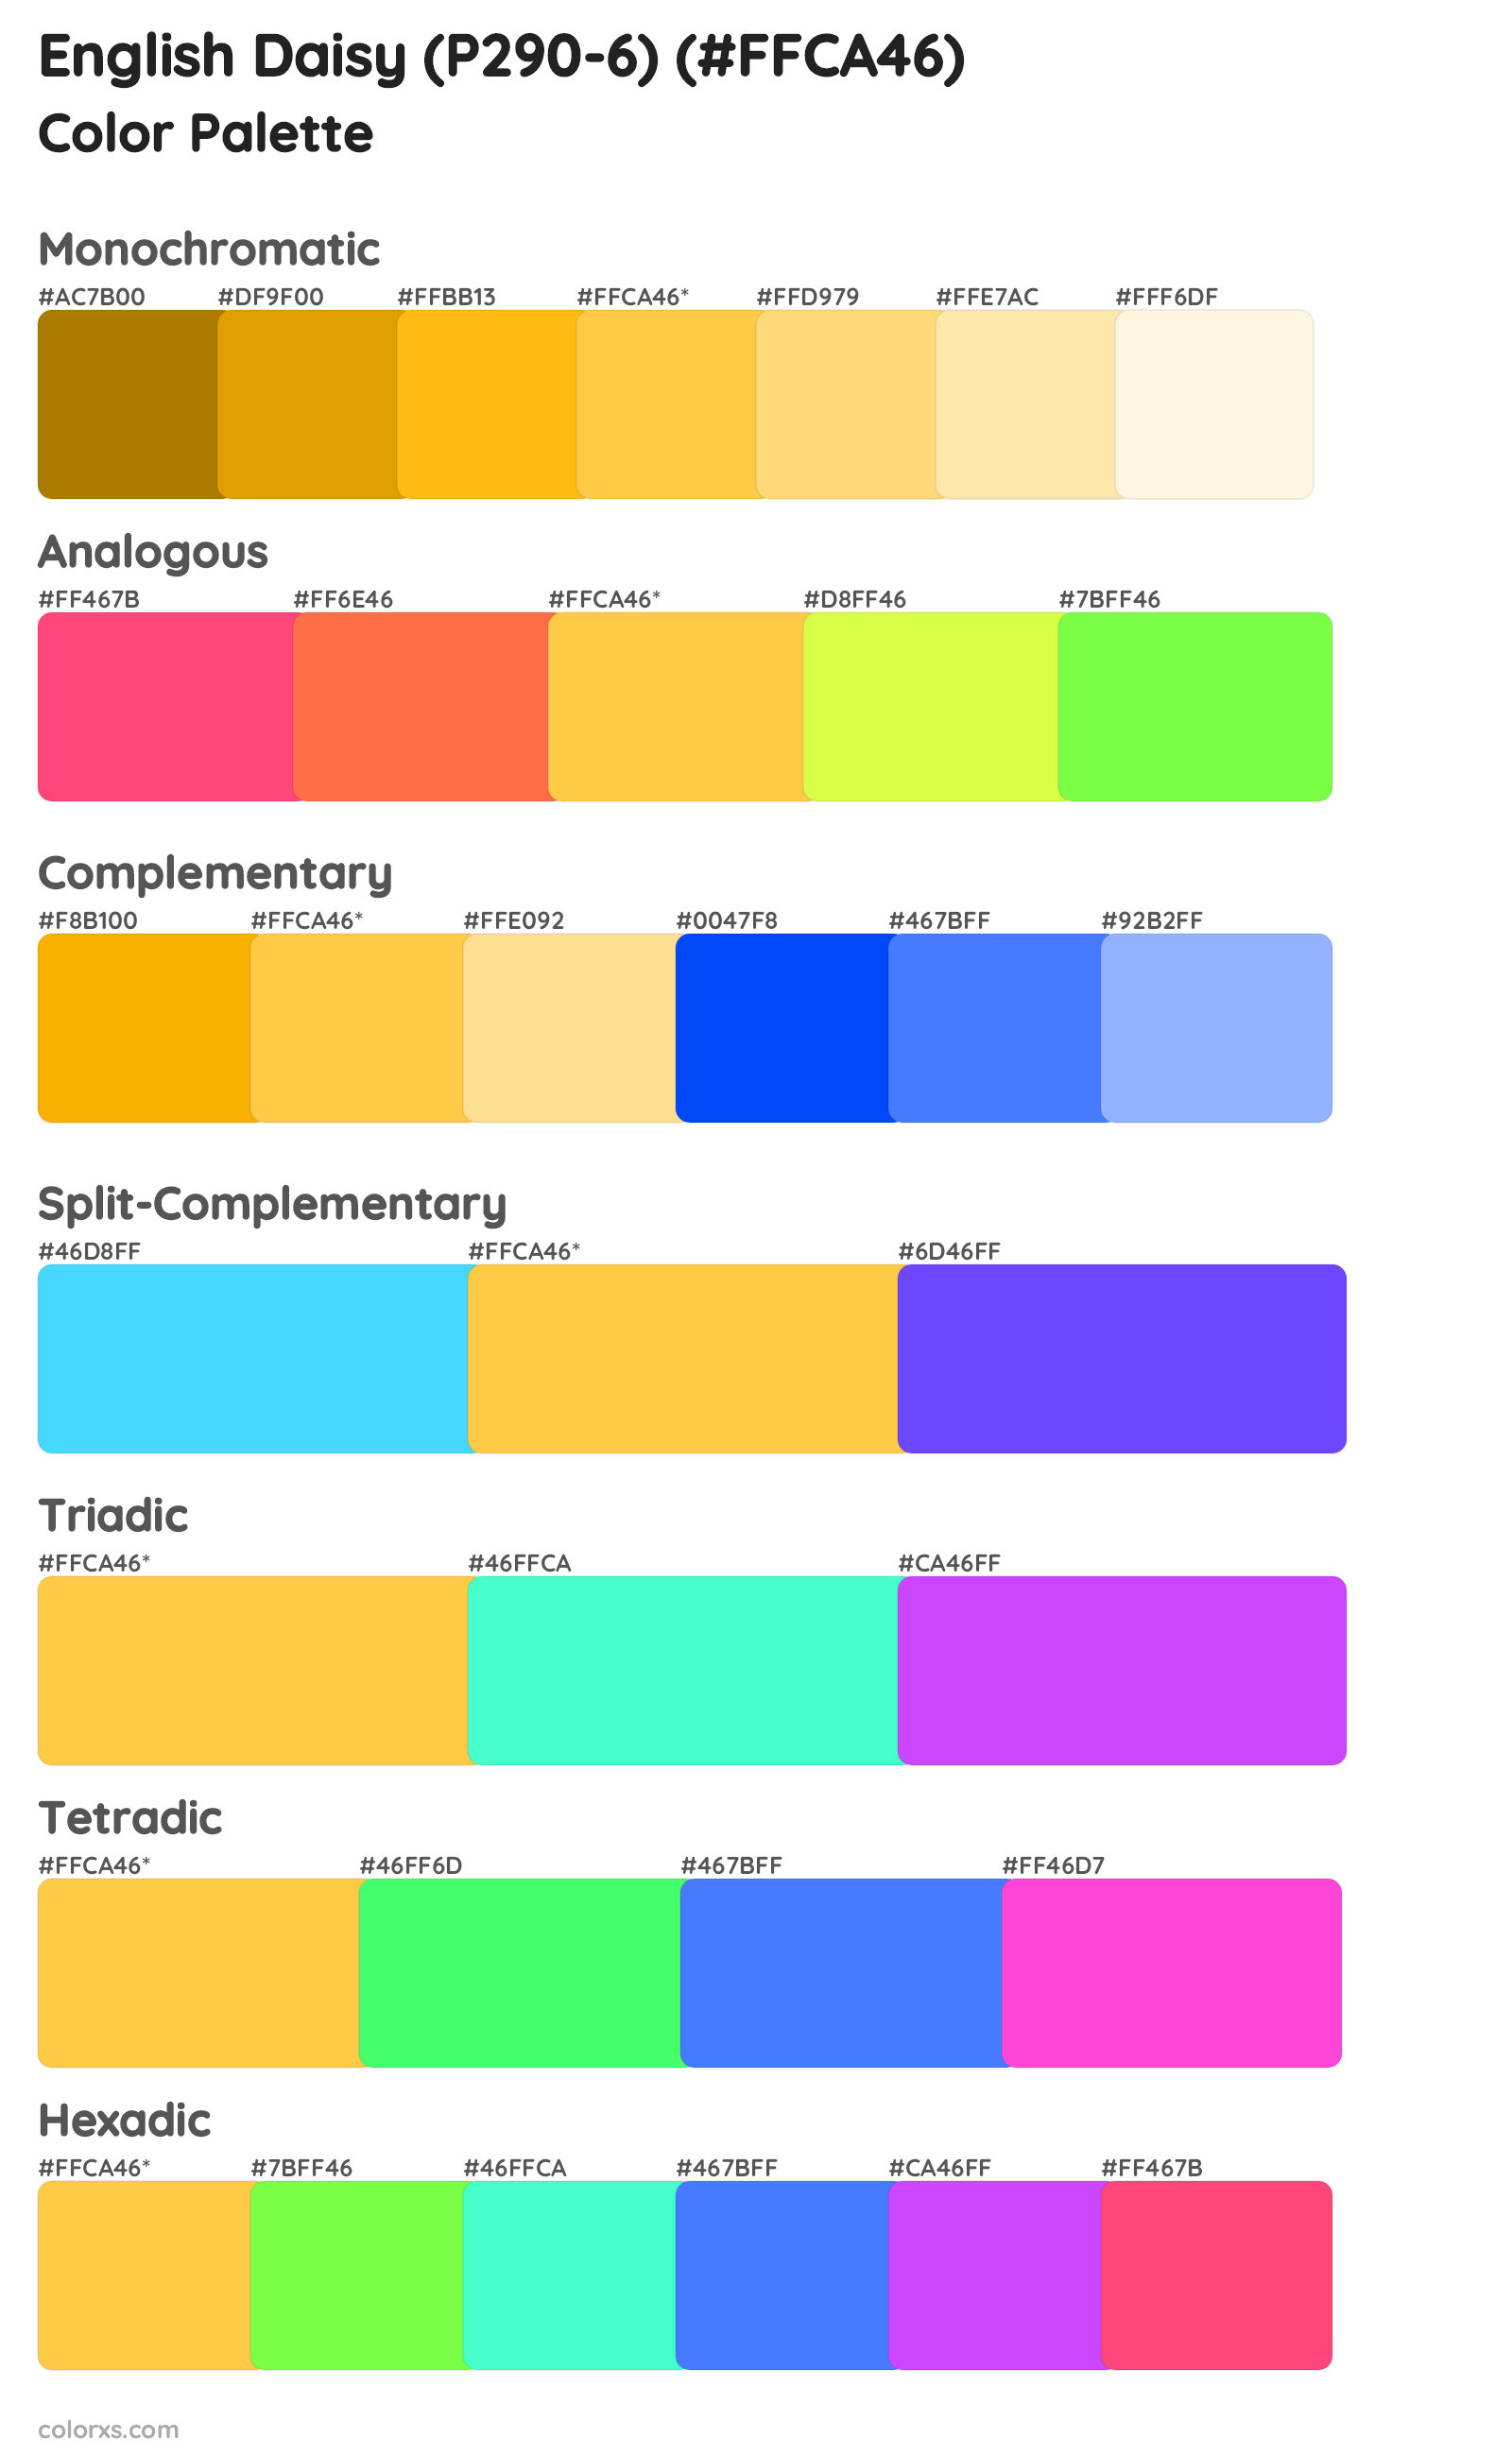 English Daisy (P290-6) Color Scheme Palettes